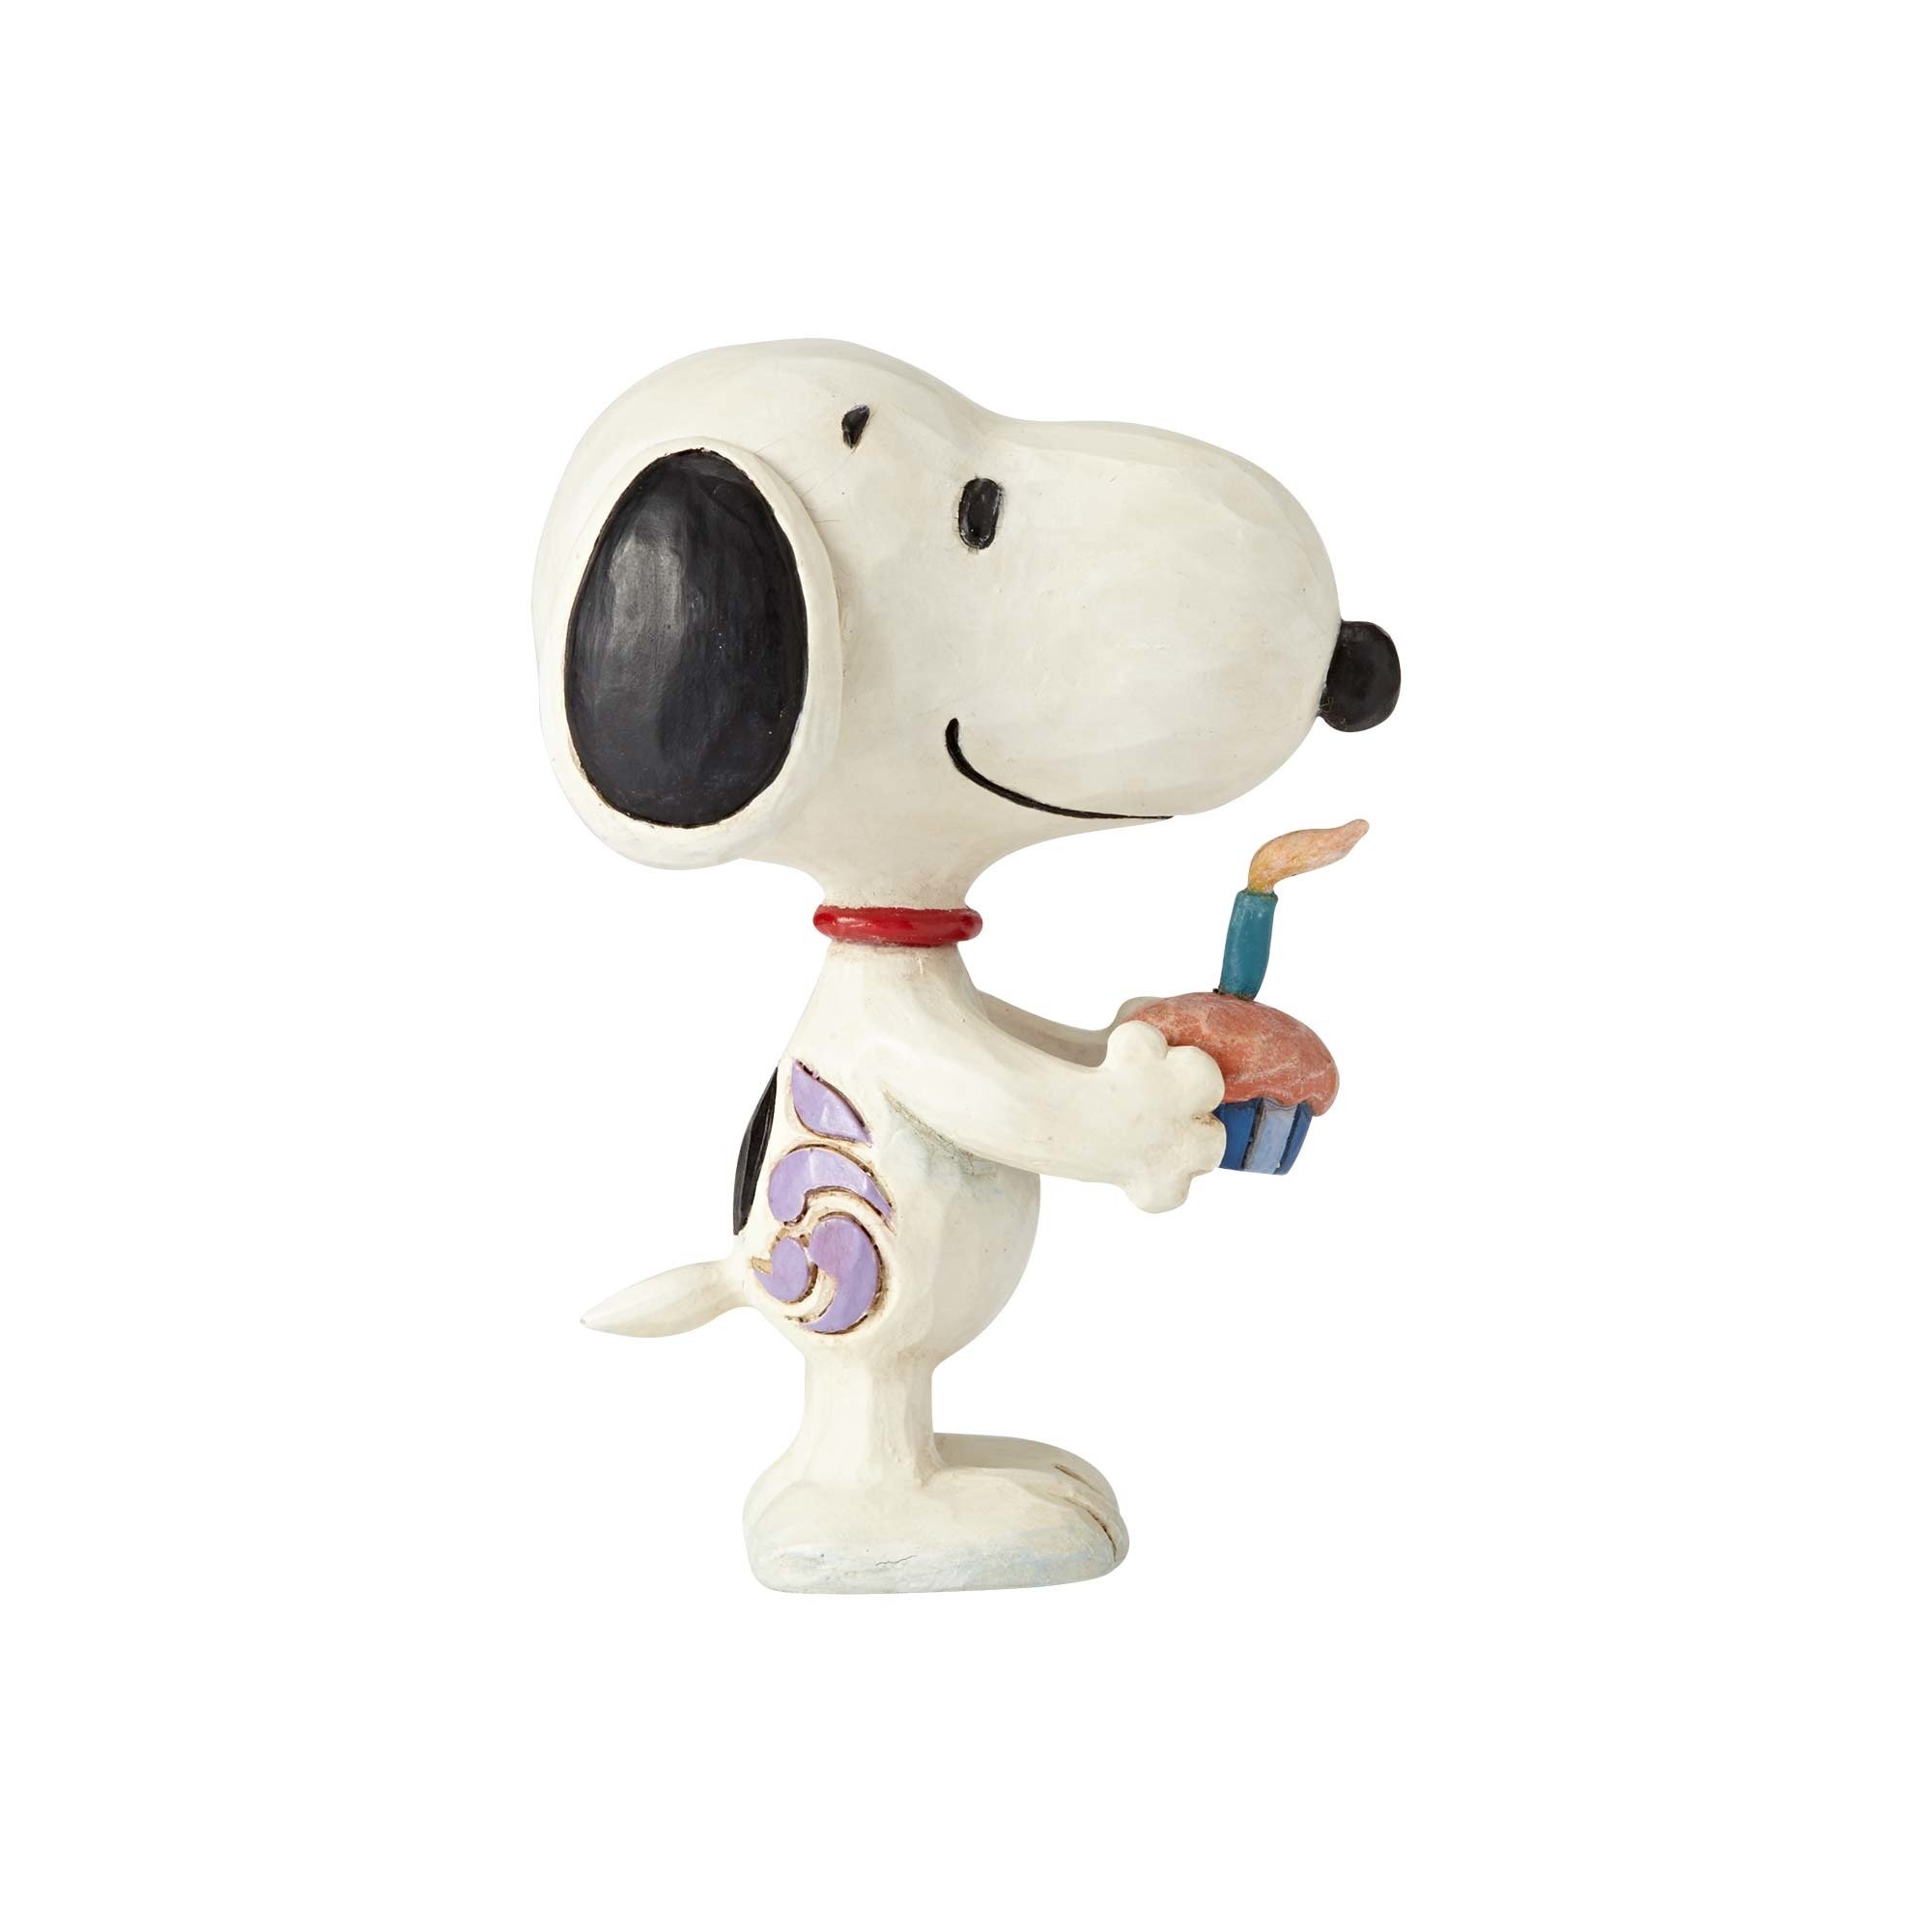 Enesco Peanuts by Jim Shore Snoopy Birthday Mini Figurine, 3 Inches, Multicolor